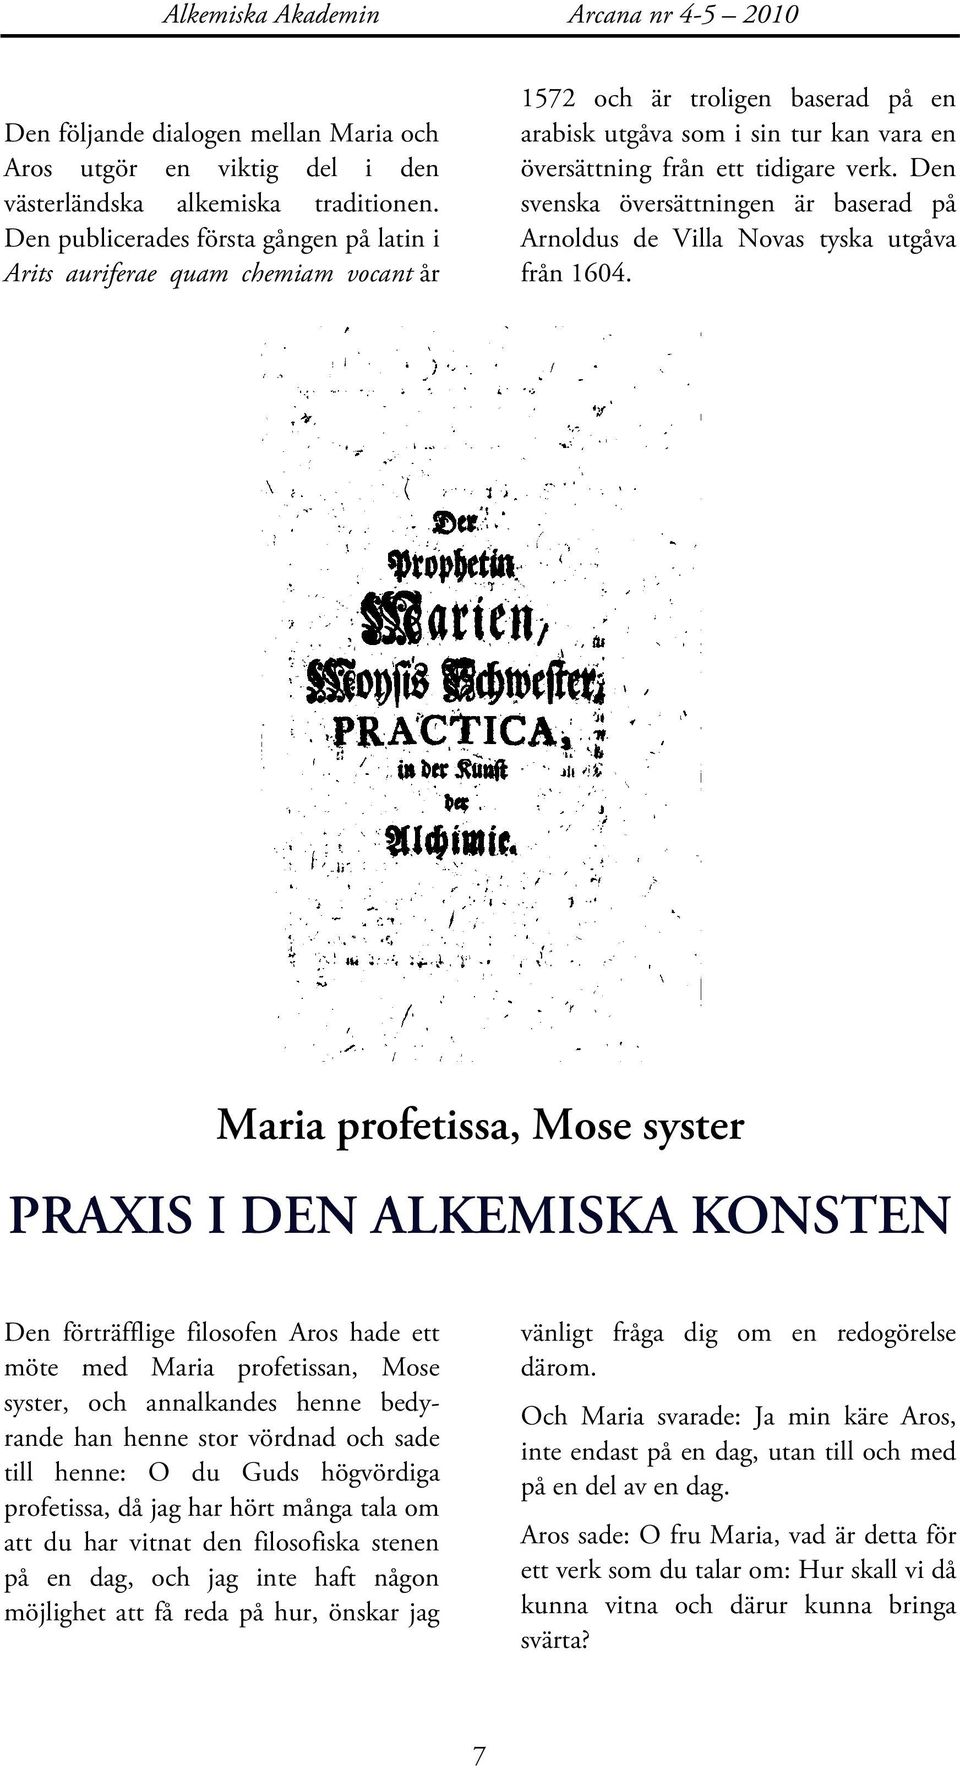 Den svenska översättningen är baserad på Arnoldus de Villa Novas tyska utgåva från 1604.